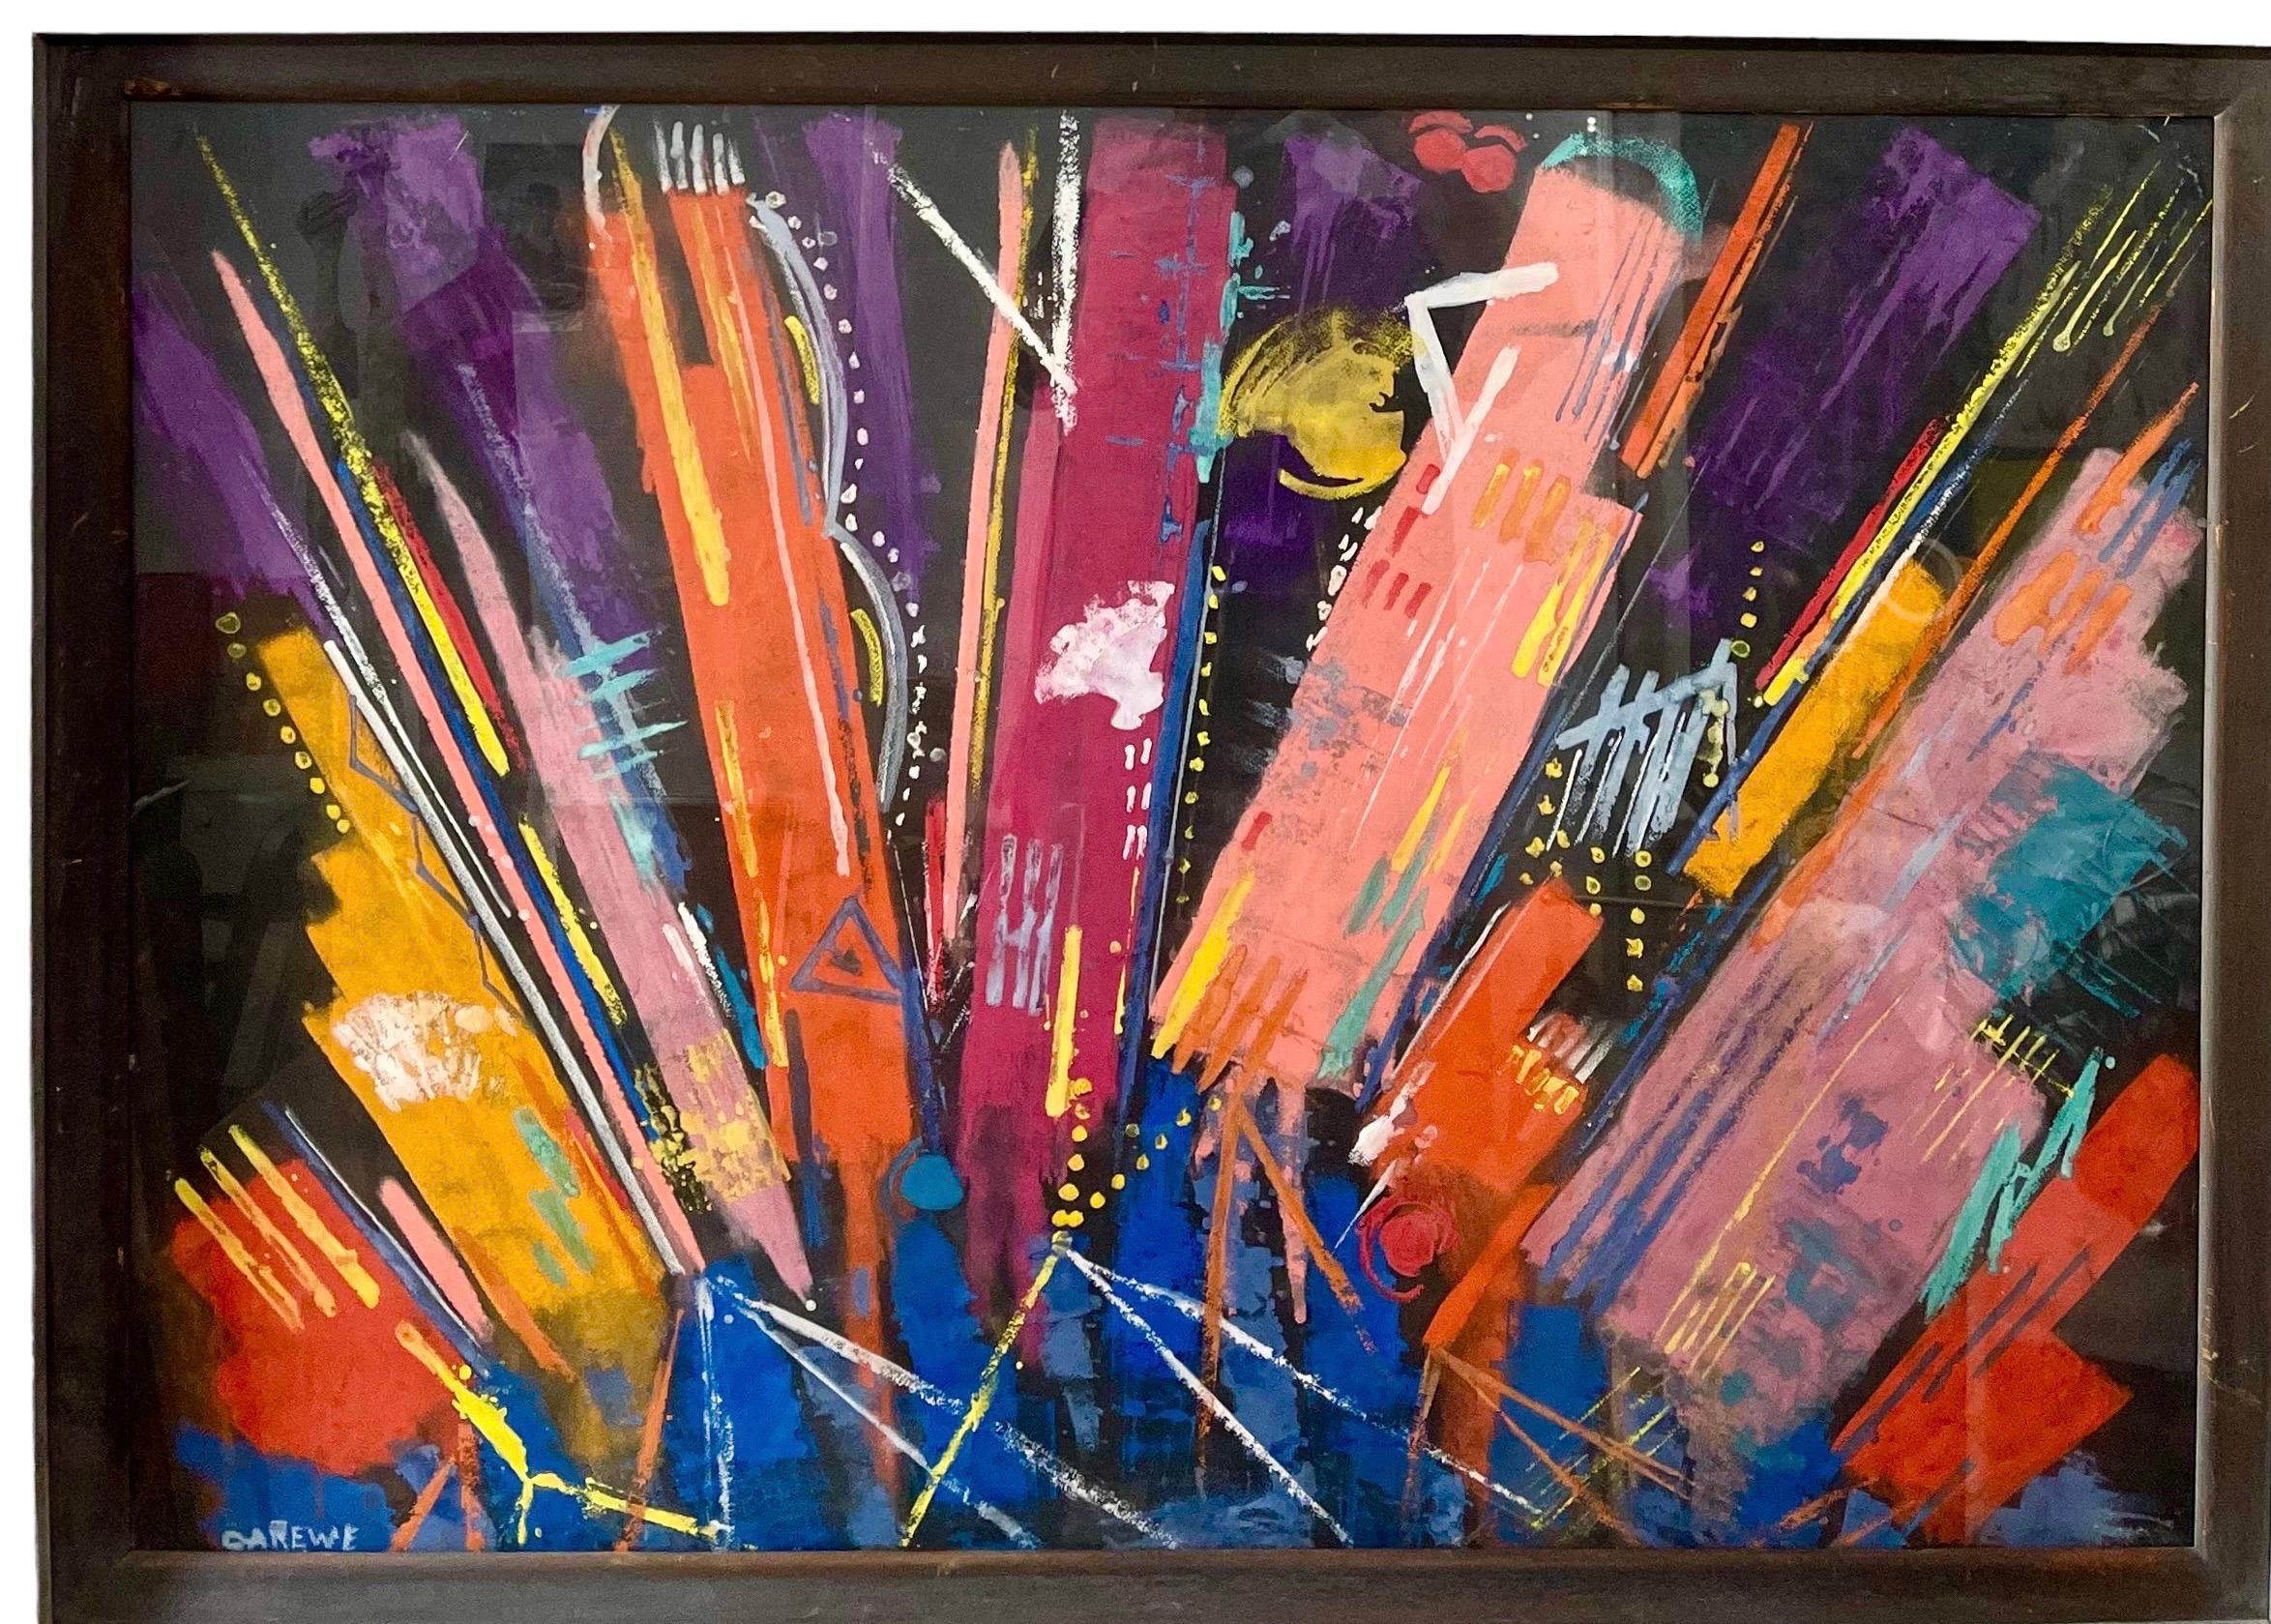 Grande peinture expressionniste abstraite moderniste colorée et pastel de Sylvia Carewe 